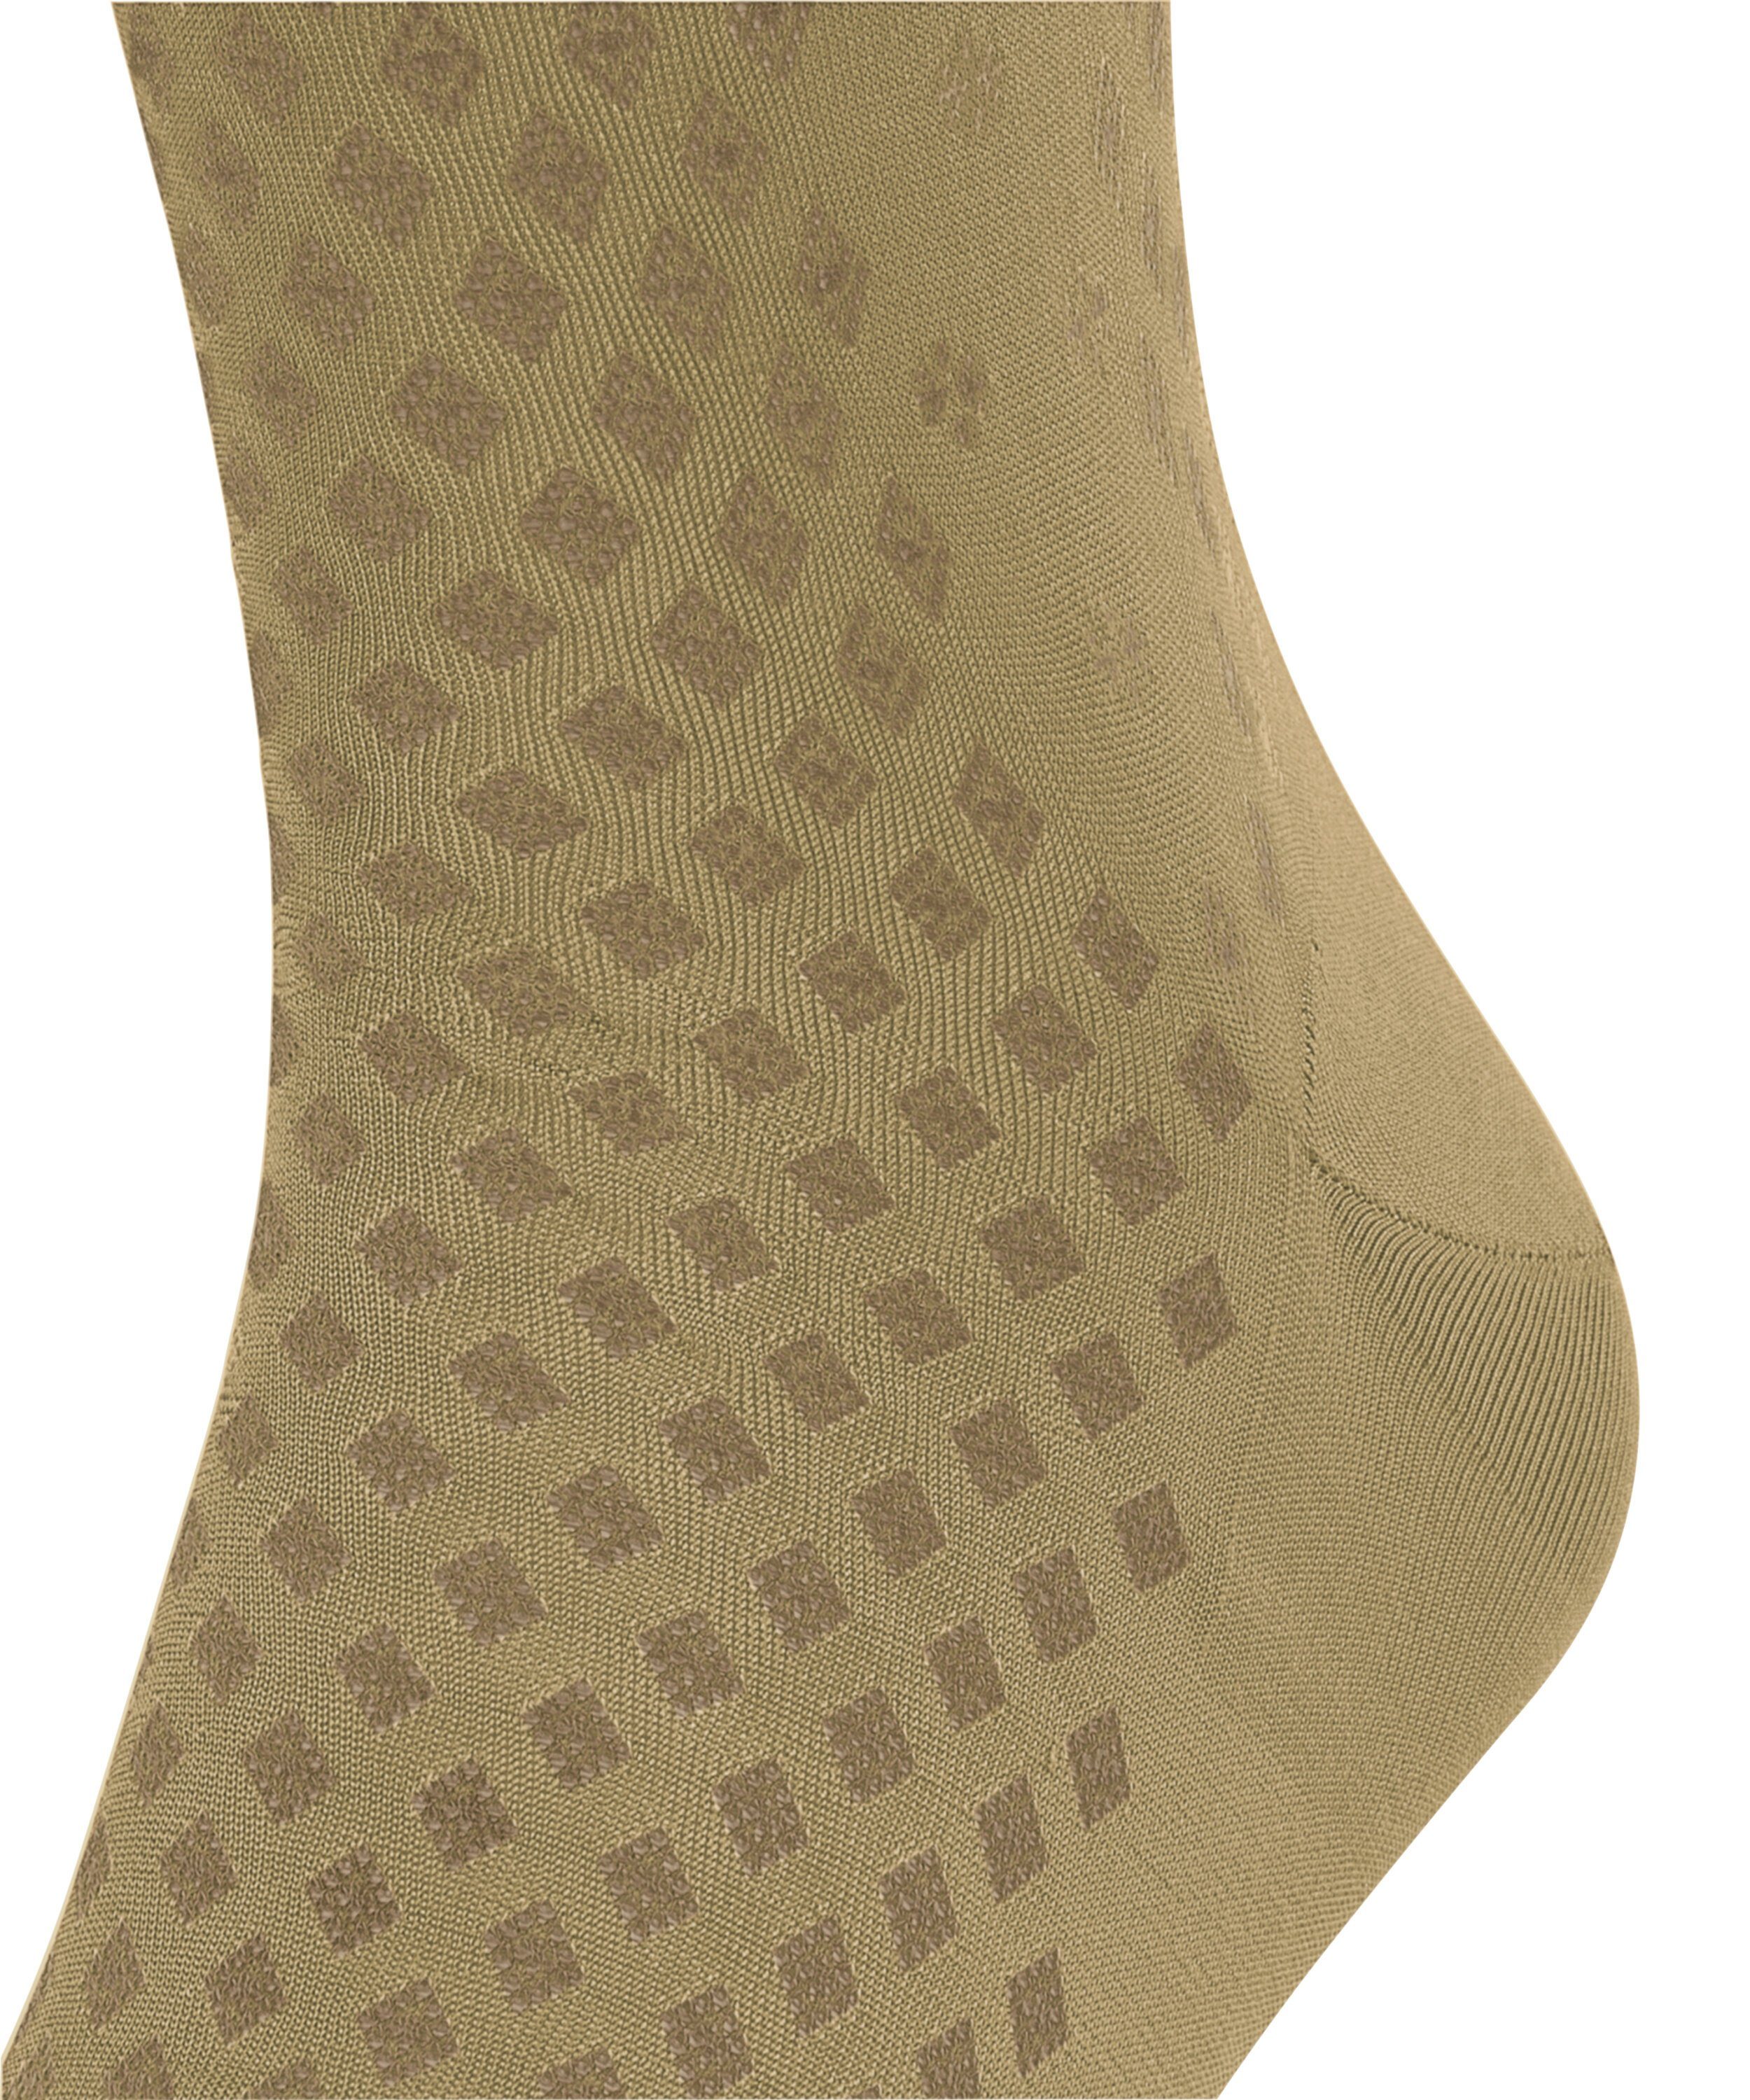 (1-Paar) Type FALKE Classy Socken